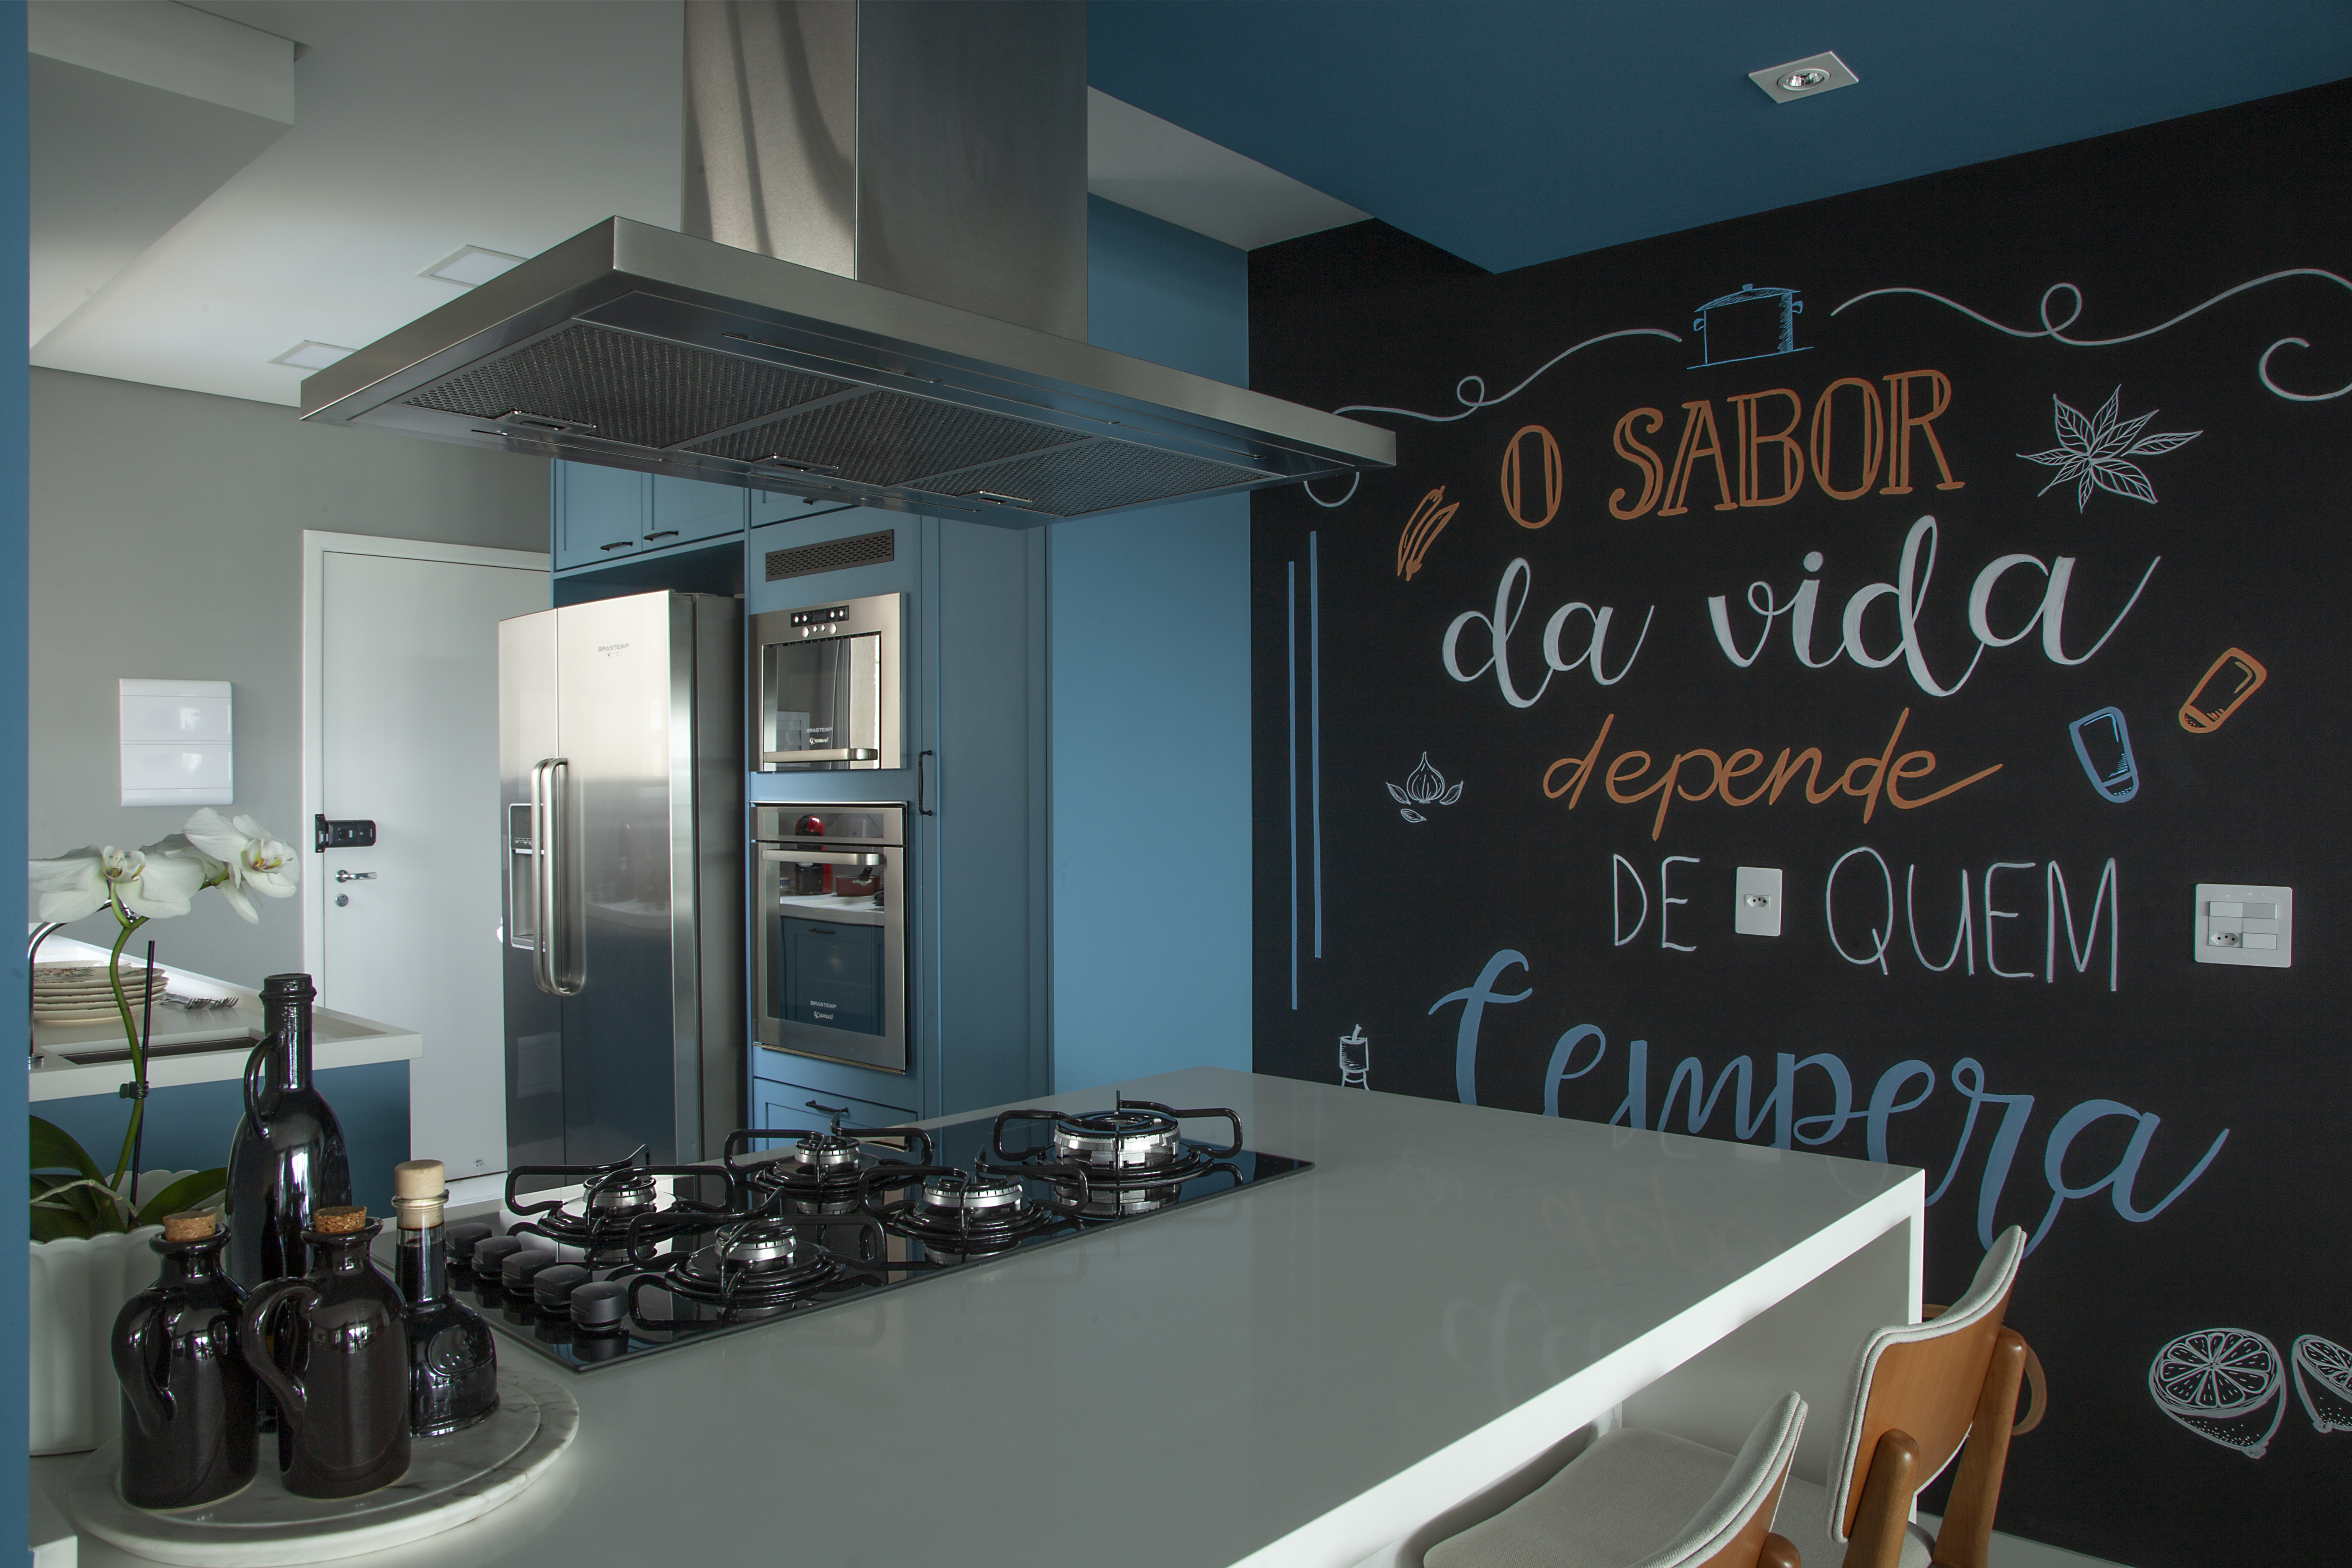 Cozinha azul: como combinar o tom com móveis e marcenaria